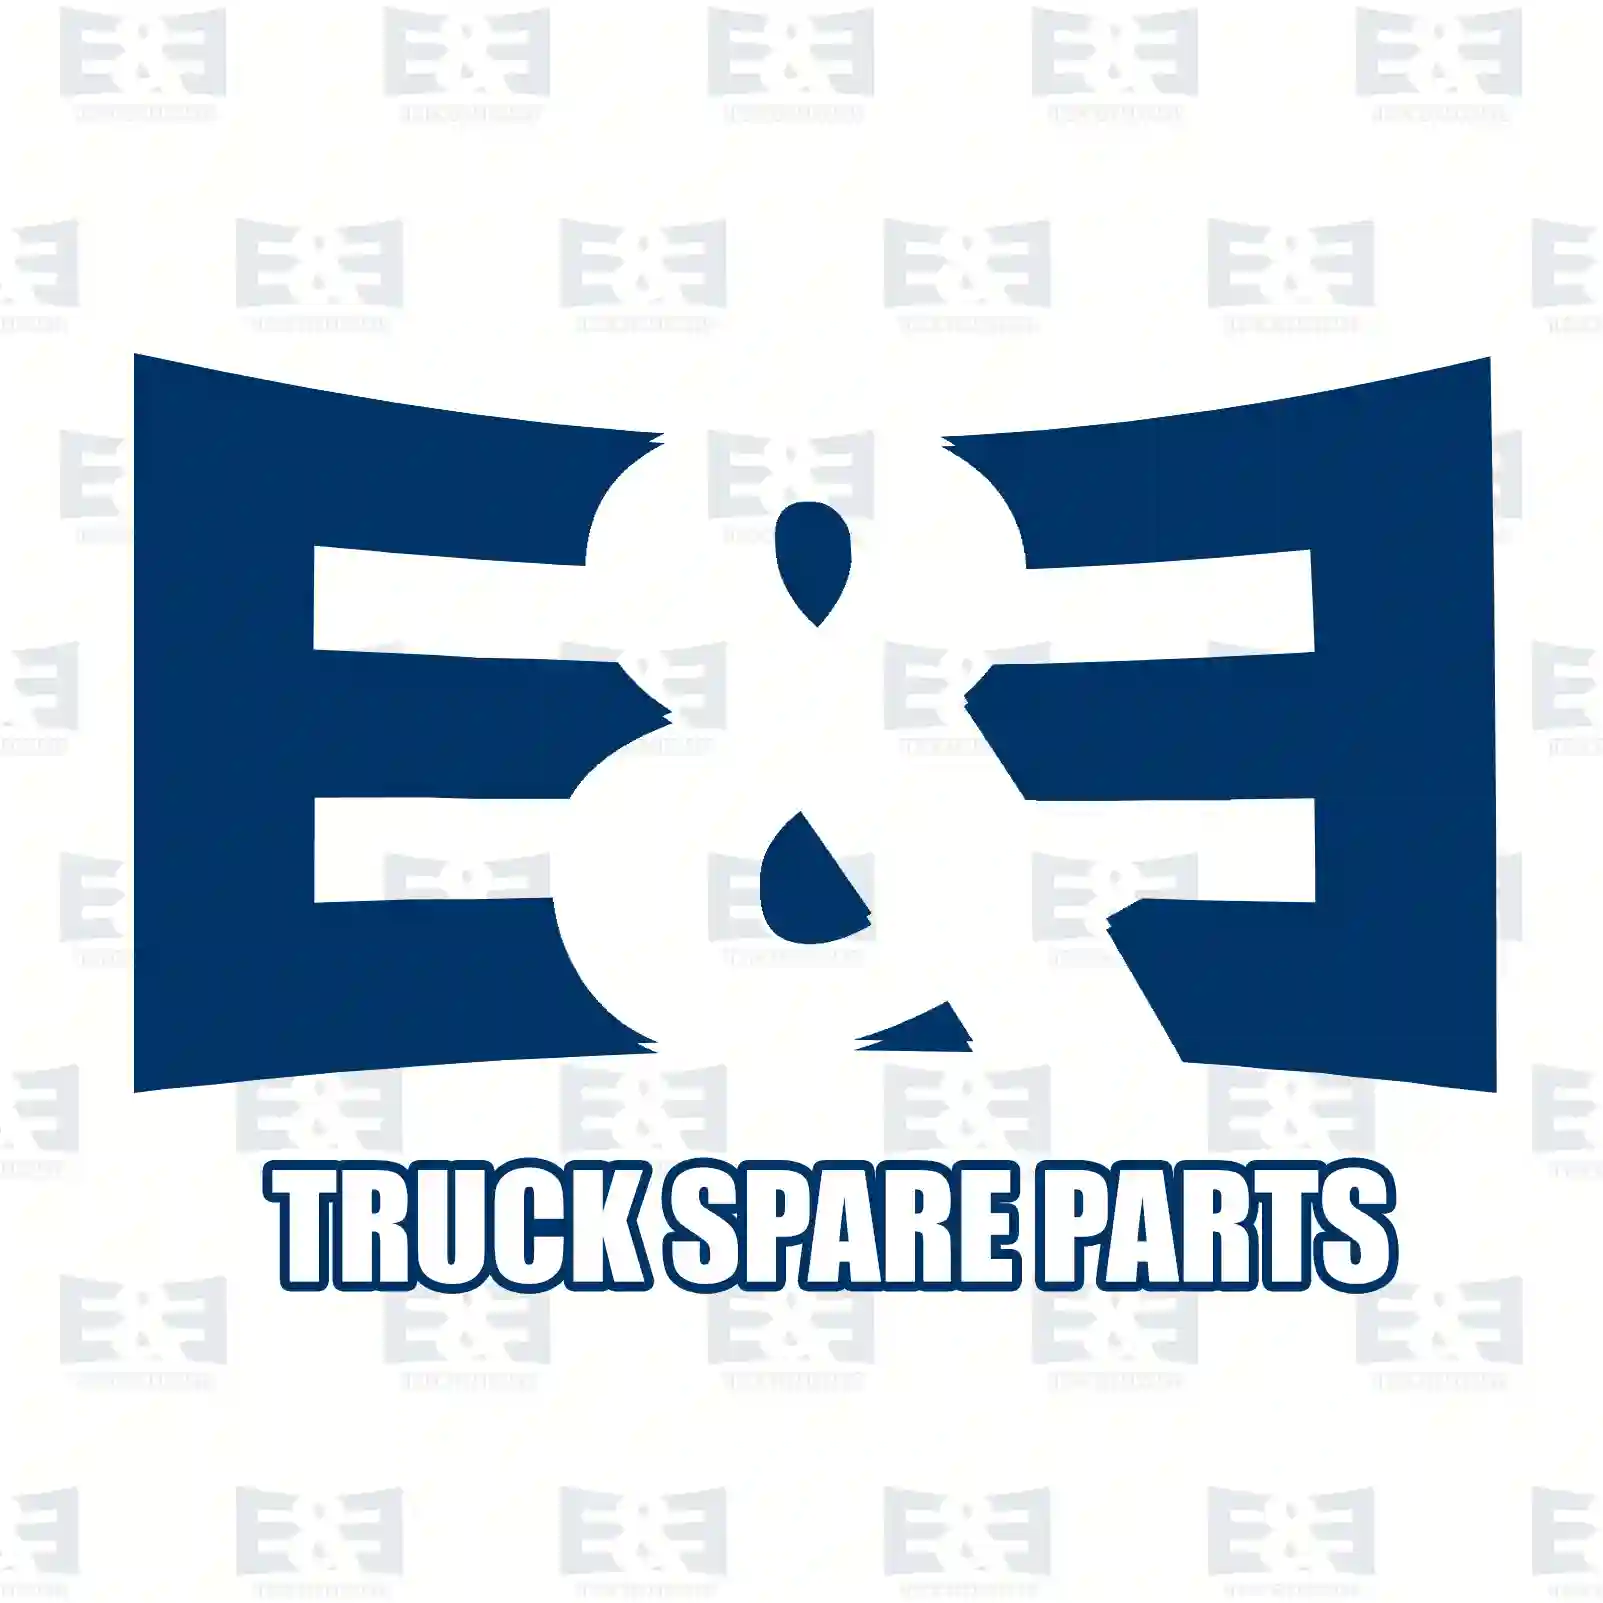 O-ring, 2E2285367, 7420799131, 20799131, ZG02886-0008 ||  2E2285367 E&E Truck Spare Parts | Truck Spare Parts, Auotomotive Spare Parts O-ring, 2E2285367, 7420799131, 20799131, ZG02886-0008 ||  2E2285367 E&E Truck Spare Parts | Truck Spare Parts, Auotomotive Spare Parts